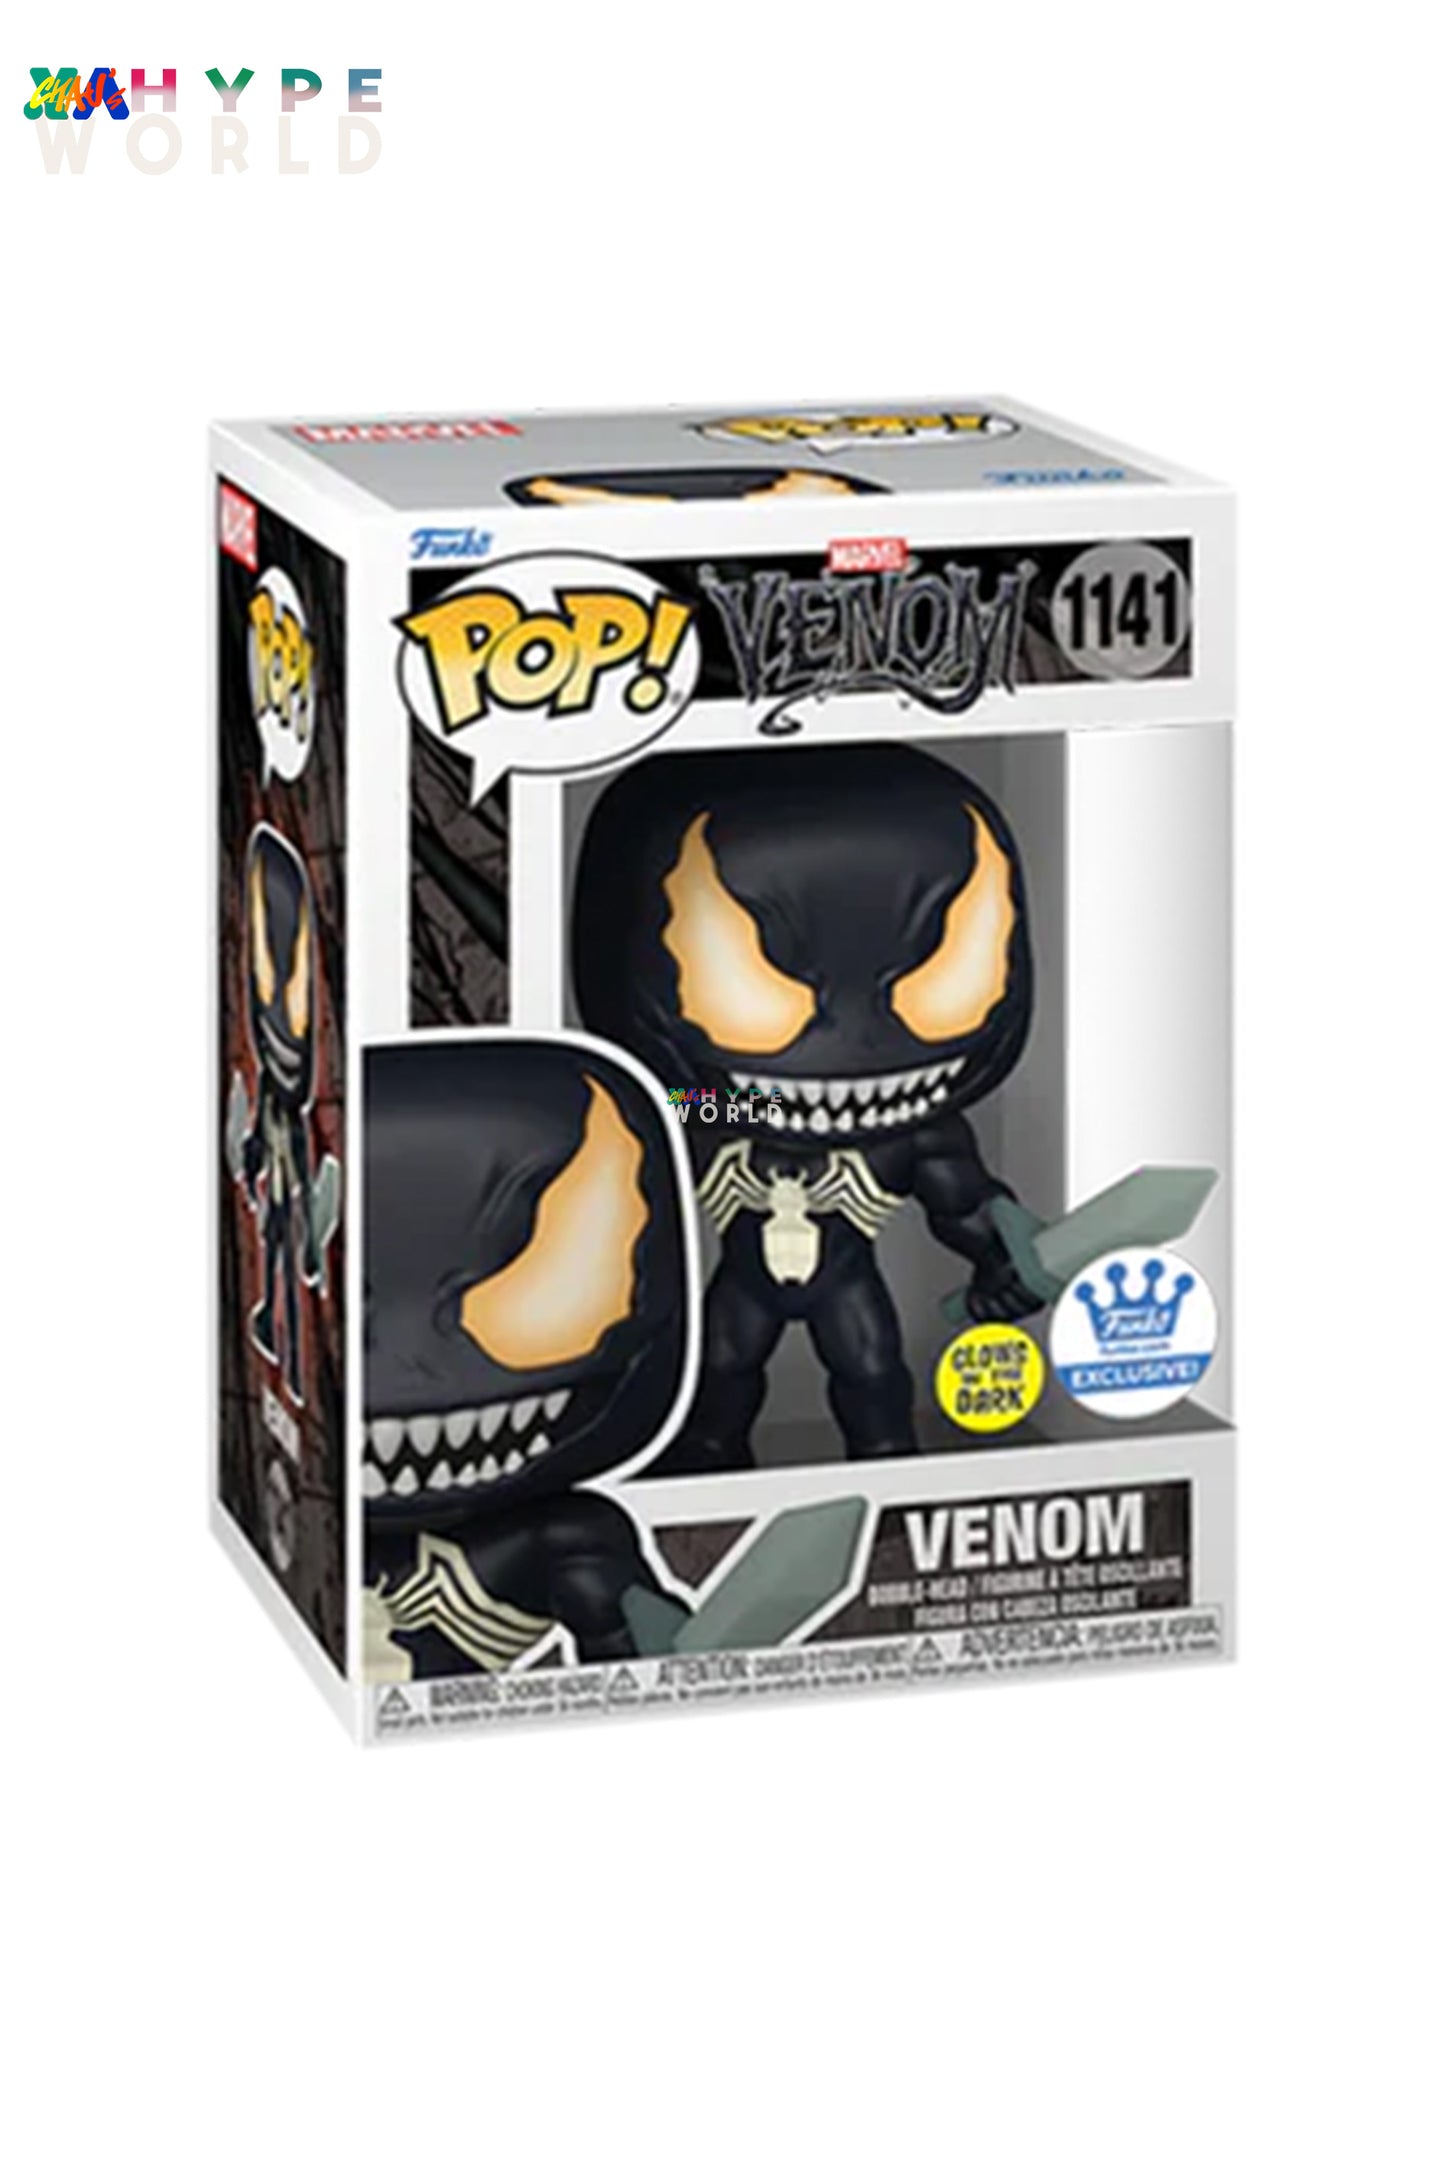 Venom 1141 (Funko Exclusive) (Glow In The Dark) [Foldable Protector]